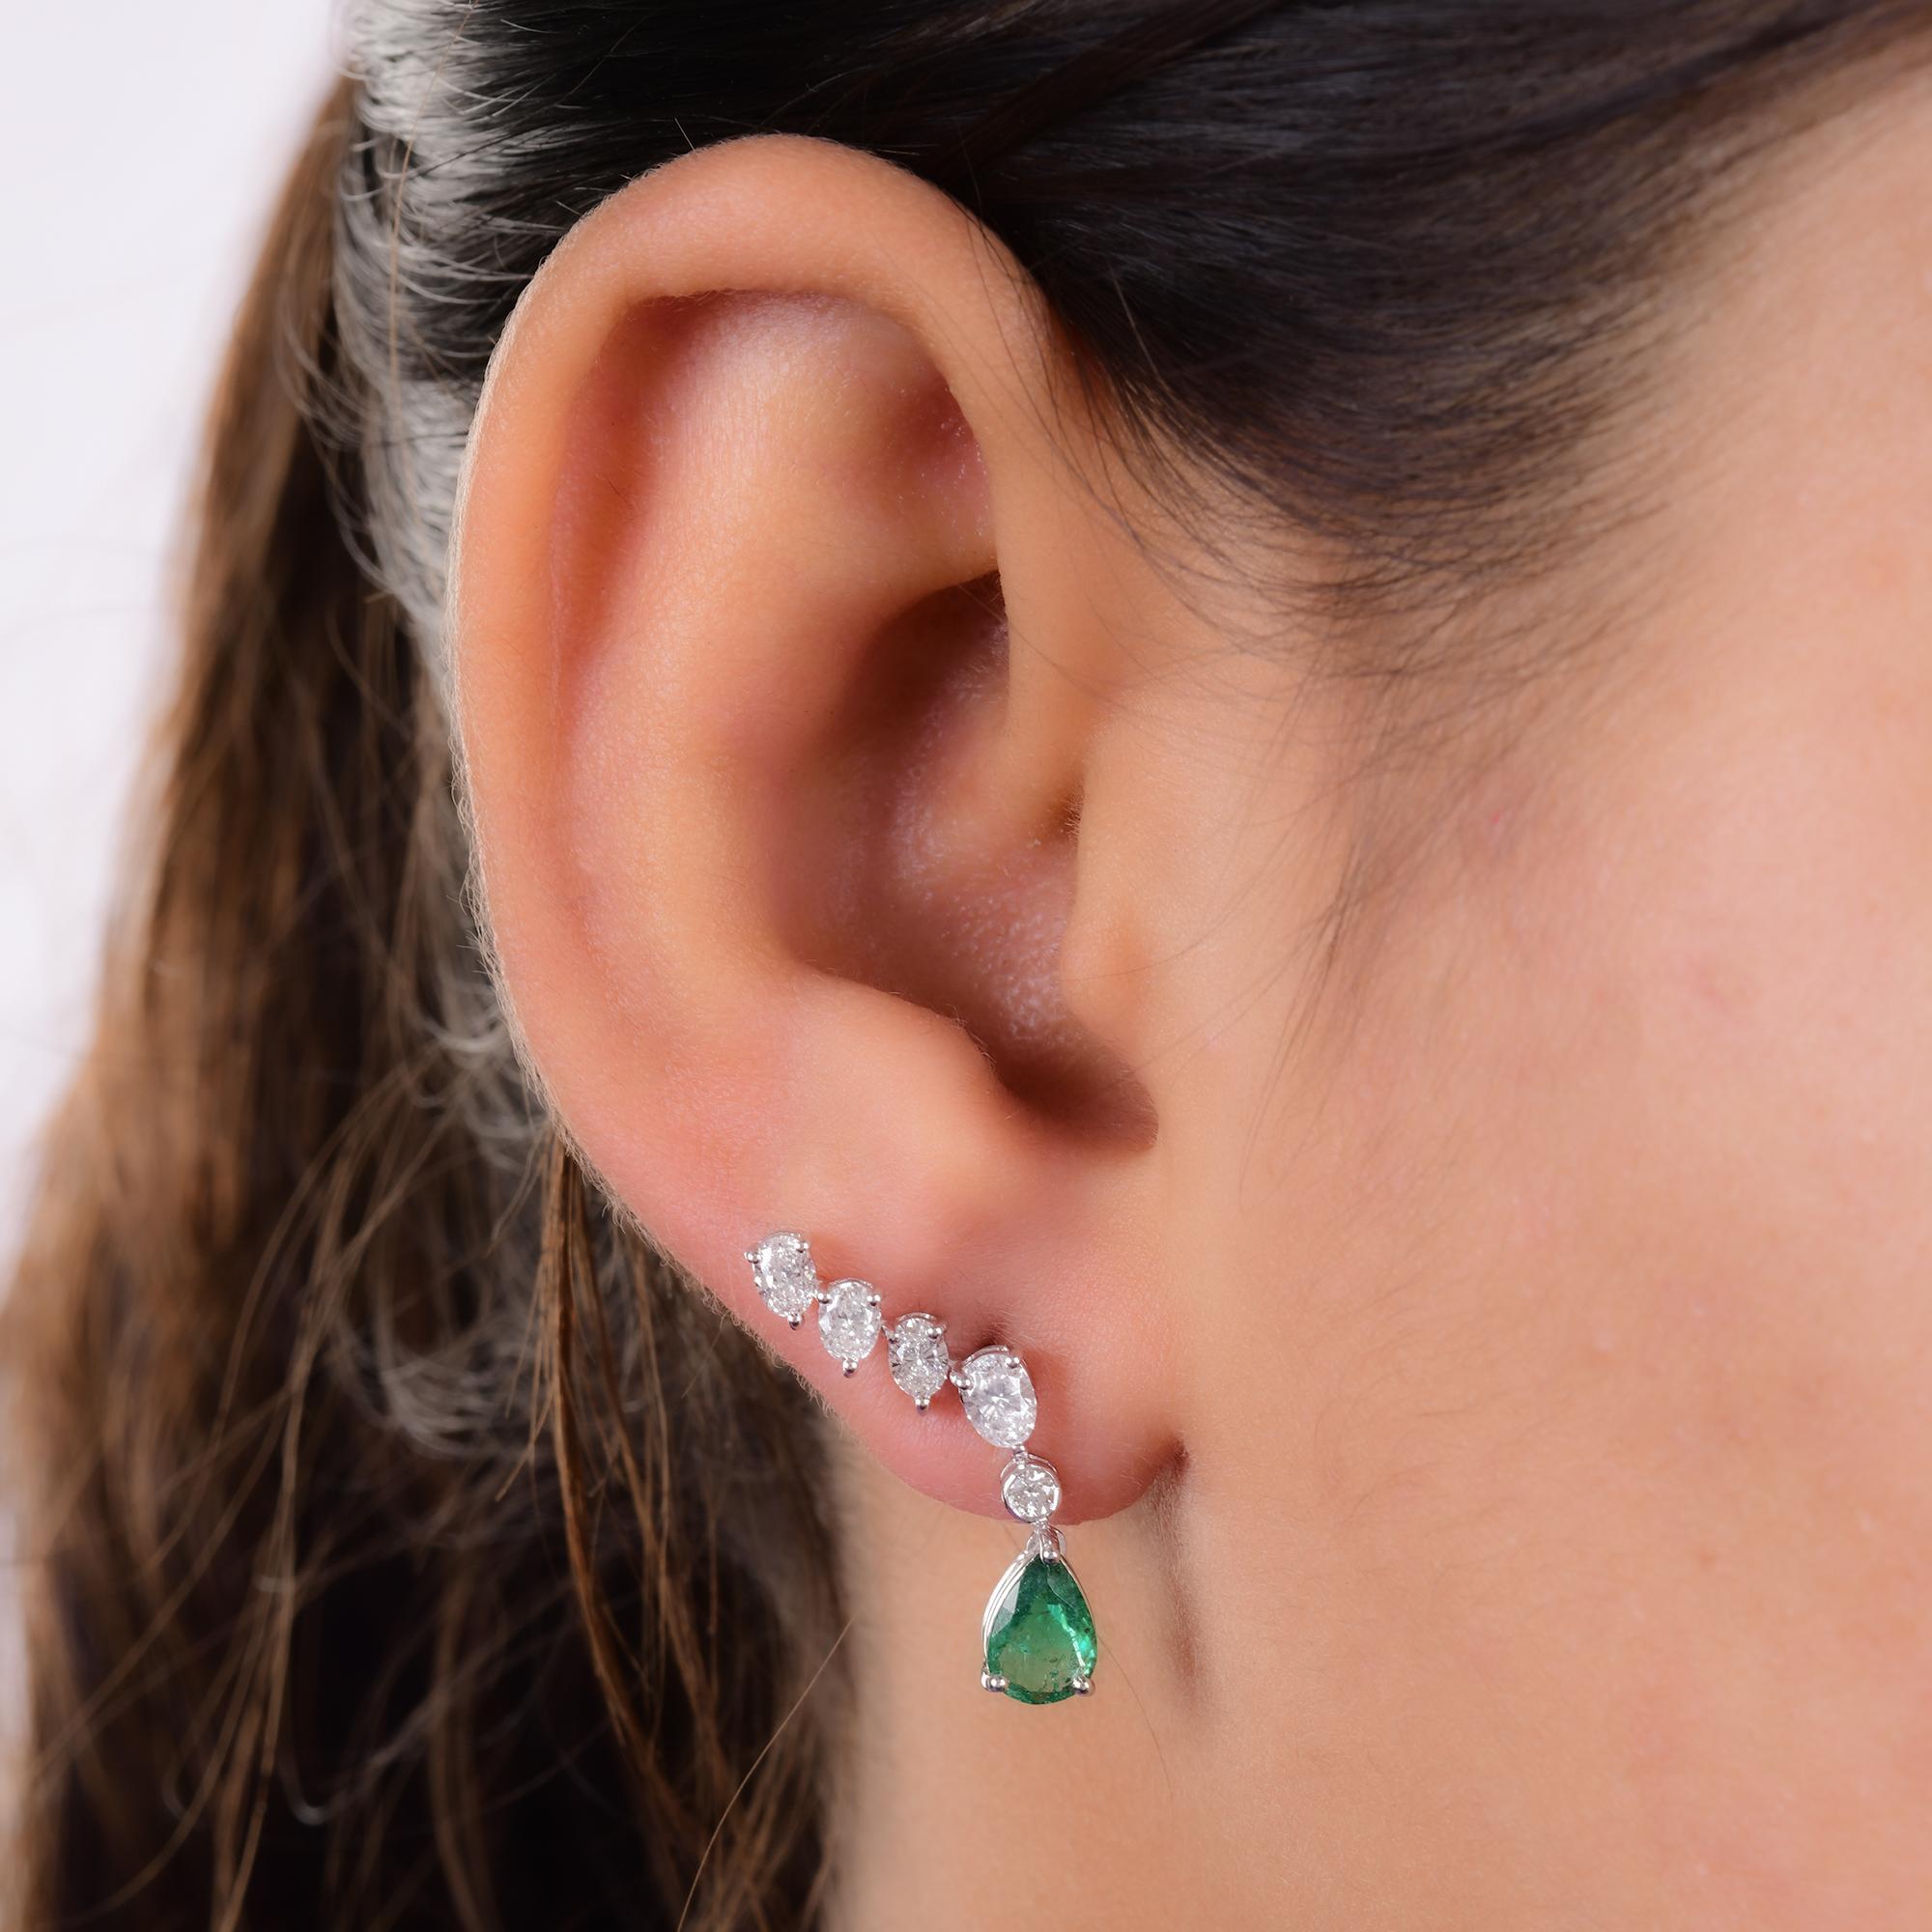 Modern Zambian Emerald Ear Clamber Earrings Diamond 14 Karat White Gold Fine Jewelry For Sale